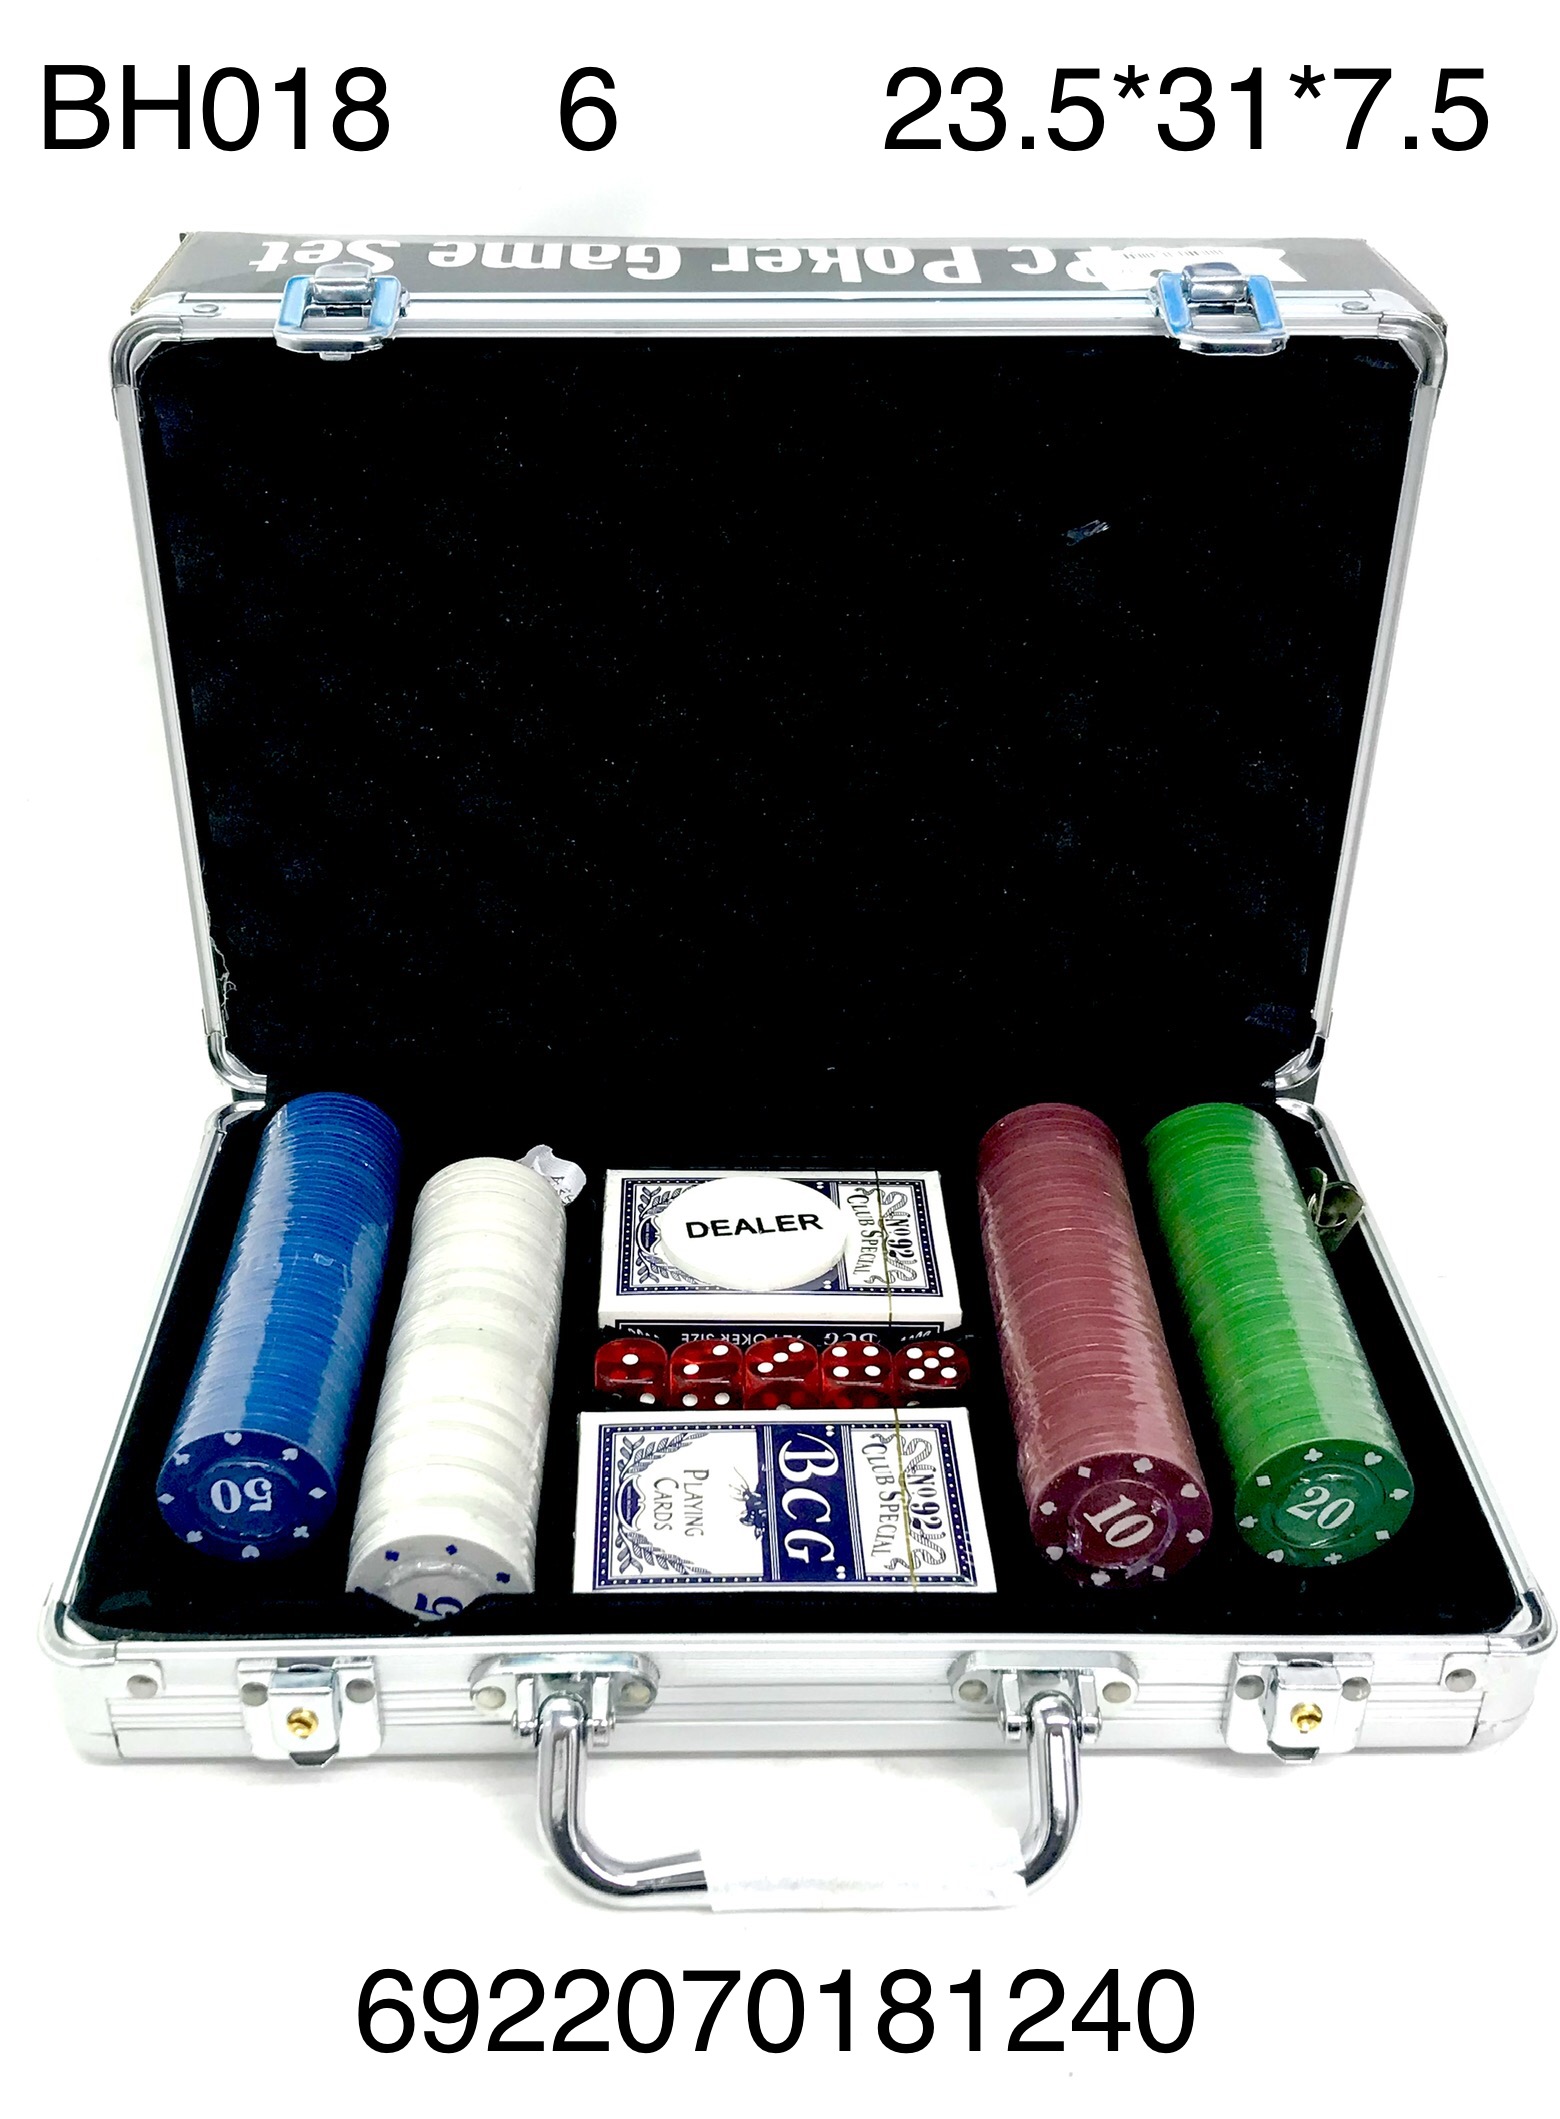 Набор для игры в покер ВН018 в кейсе - Орск 